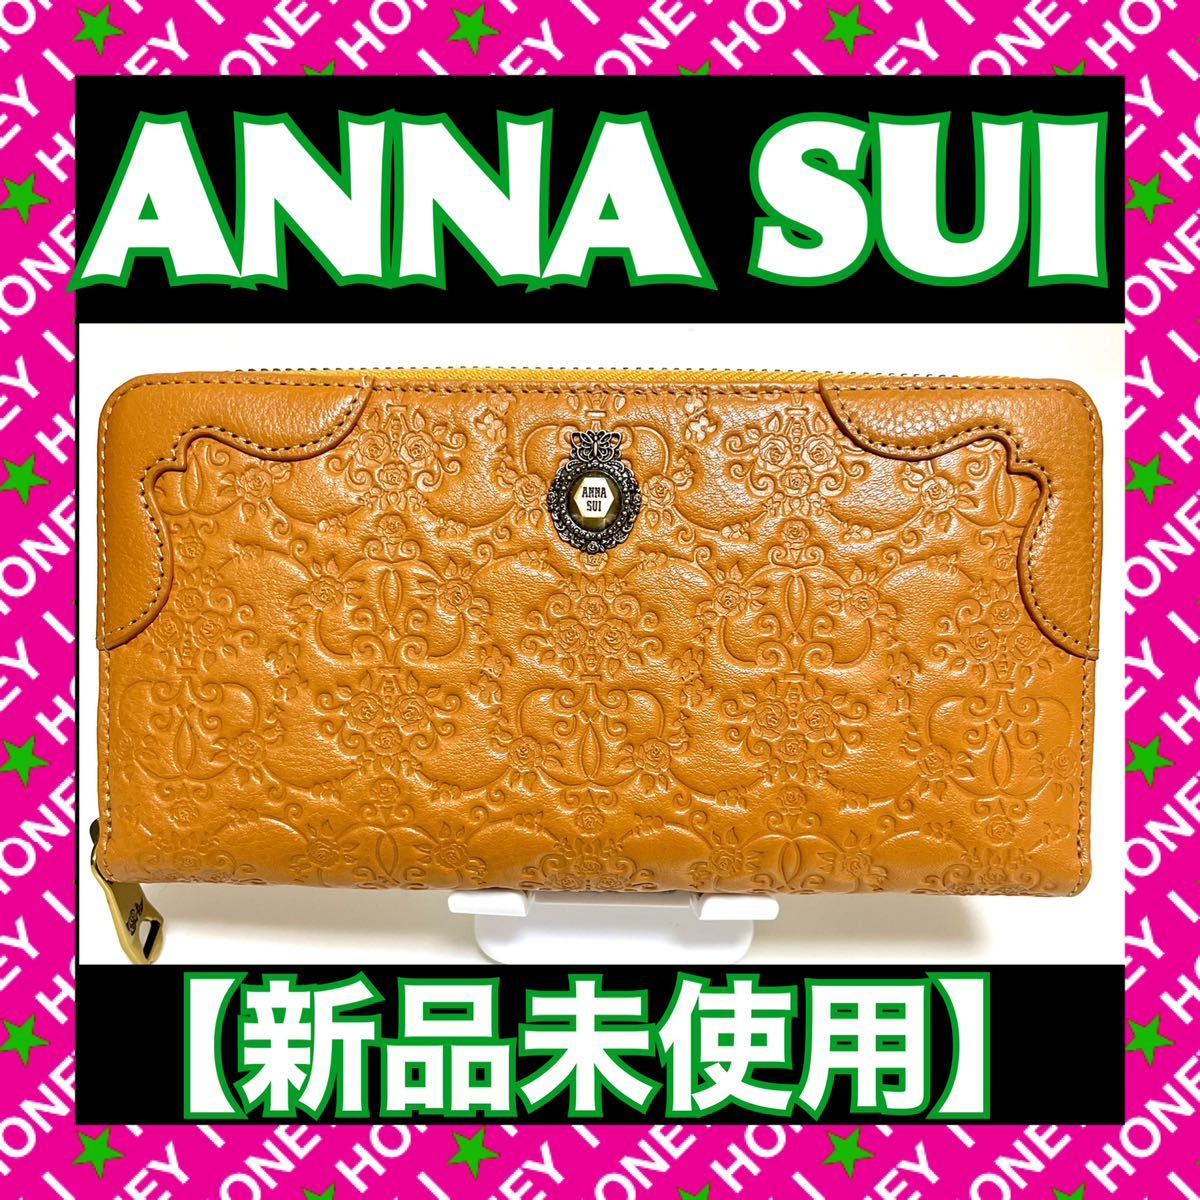 【新品未使用】ANNA SUI 財布 ヴィンテージローズ 薔薇 キャメル 茶